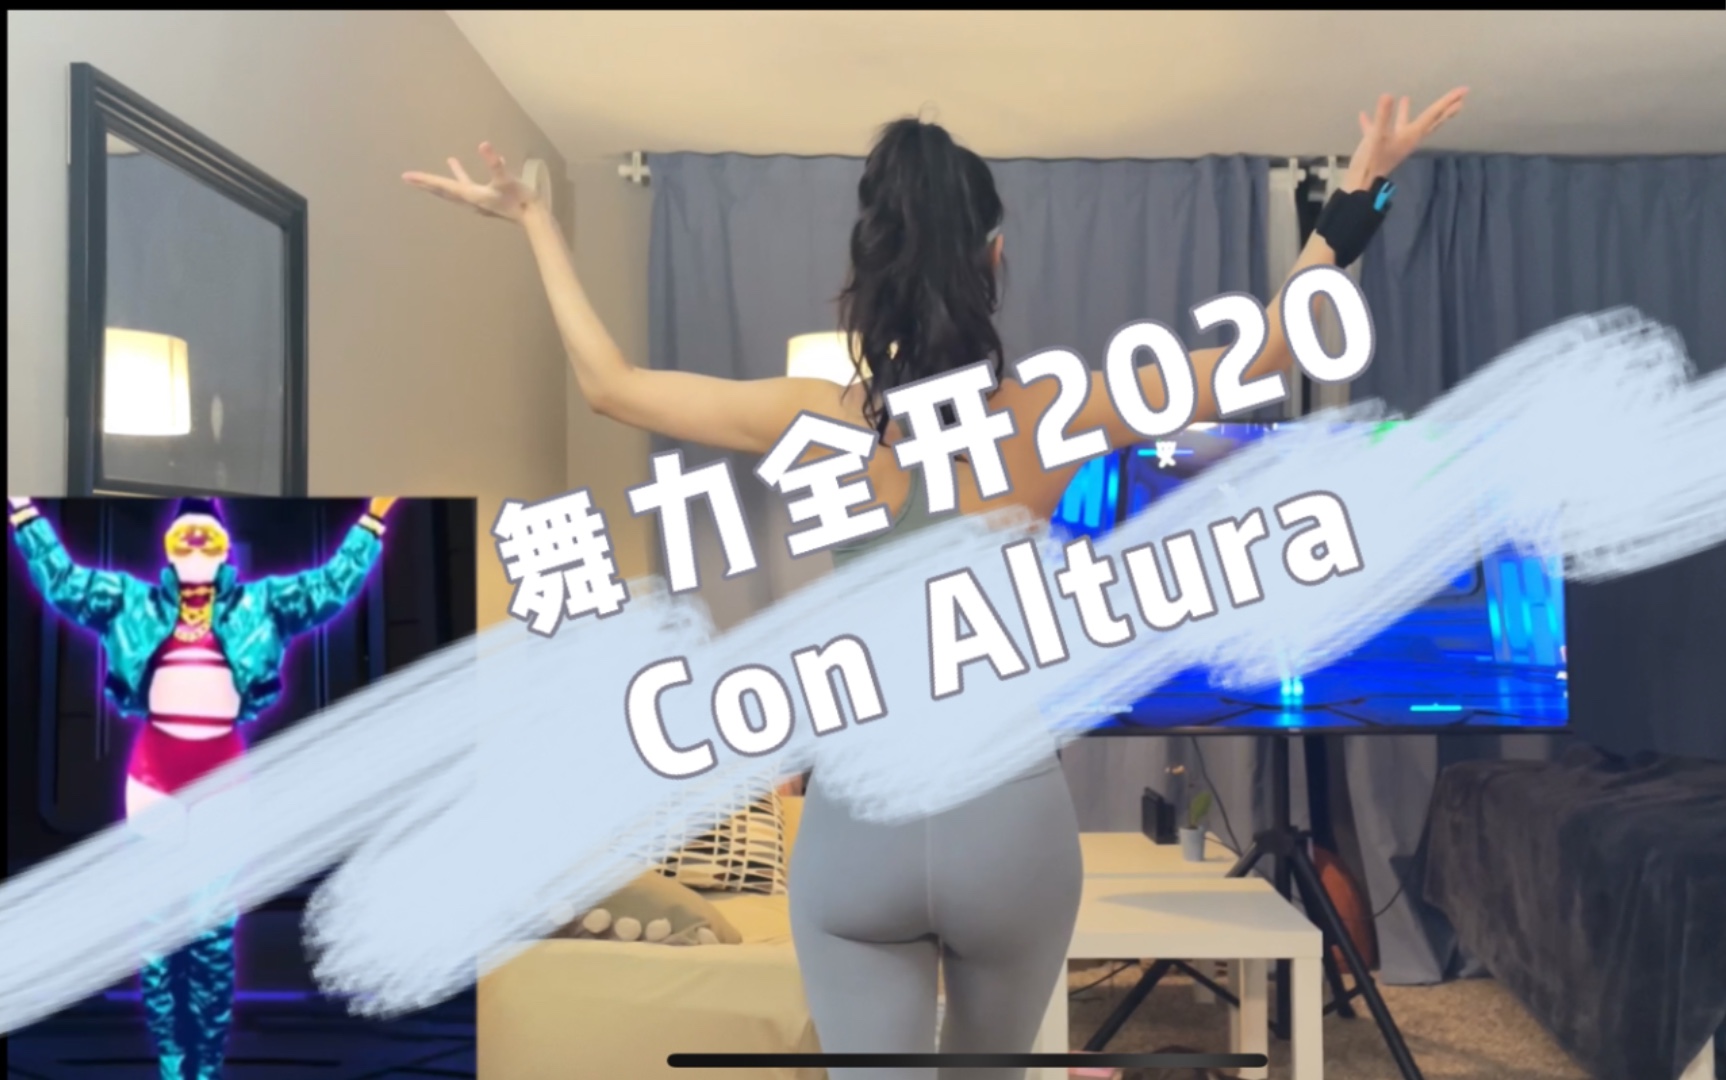 [图]Just Dance舞力全开2020 - Con Altura